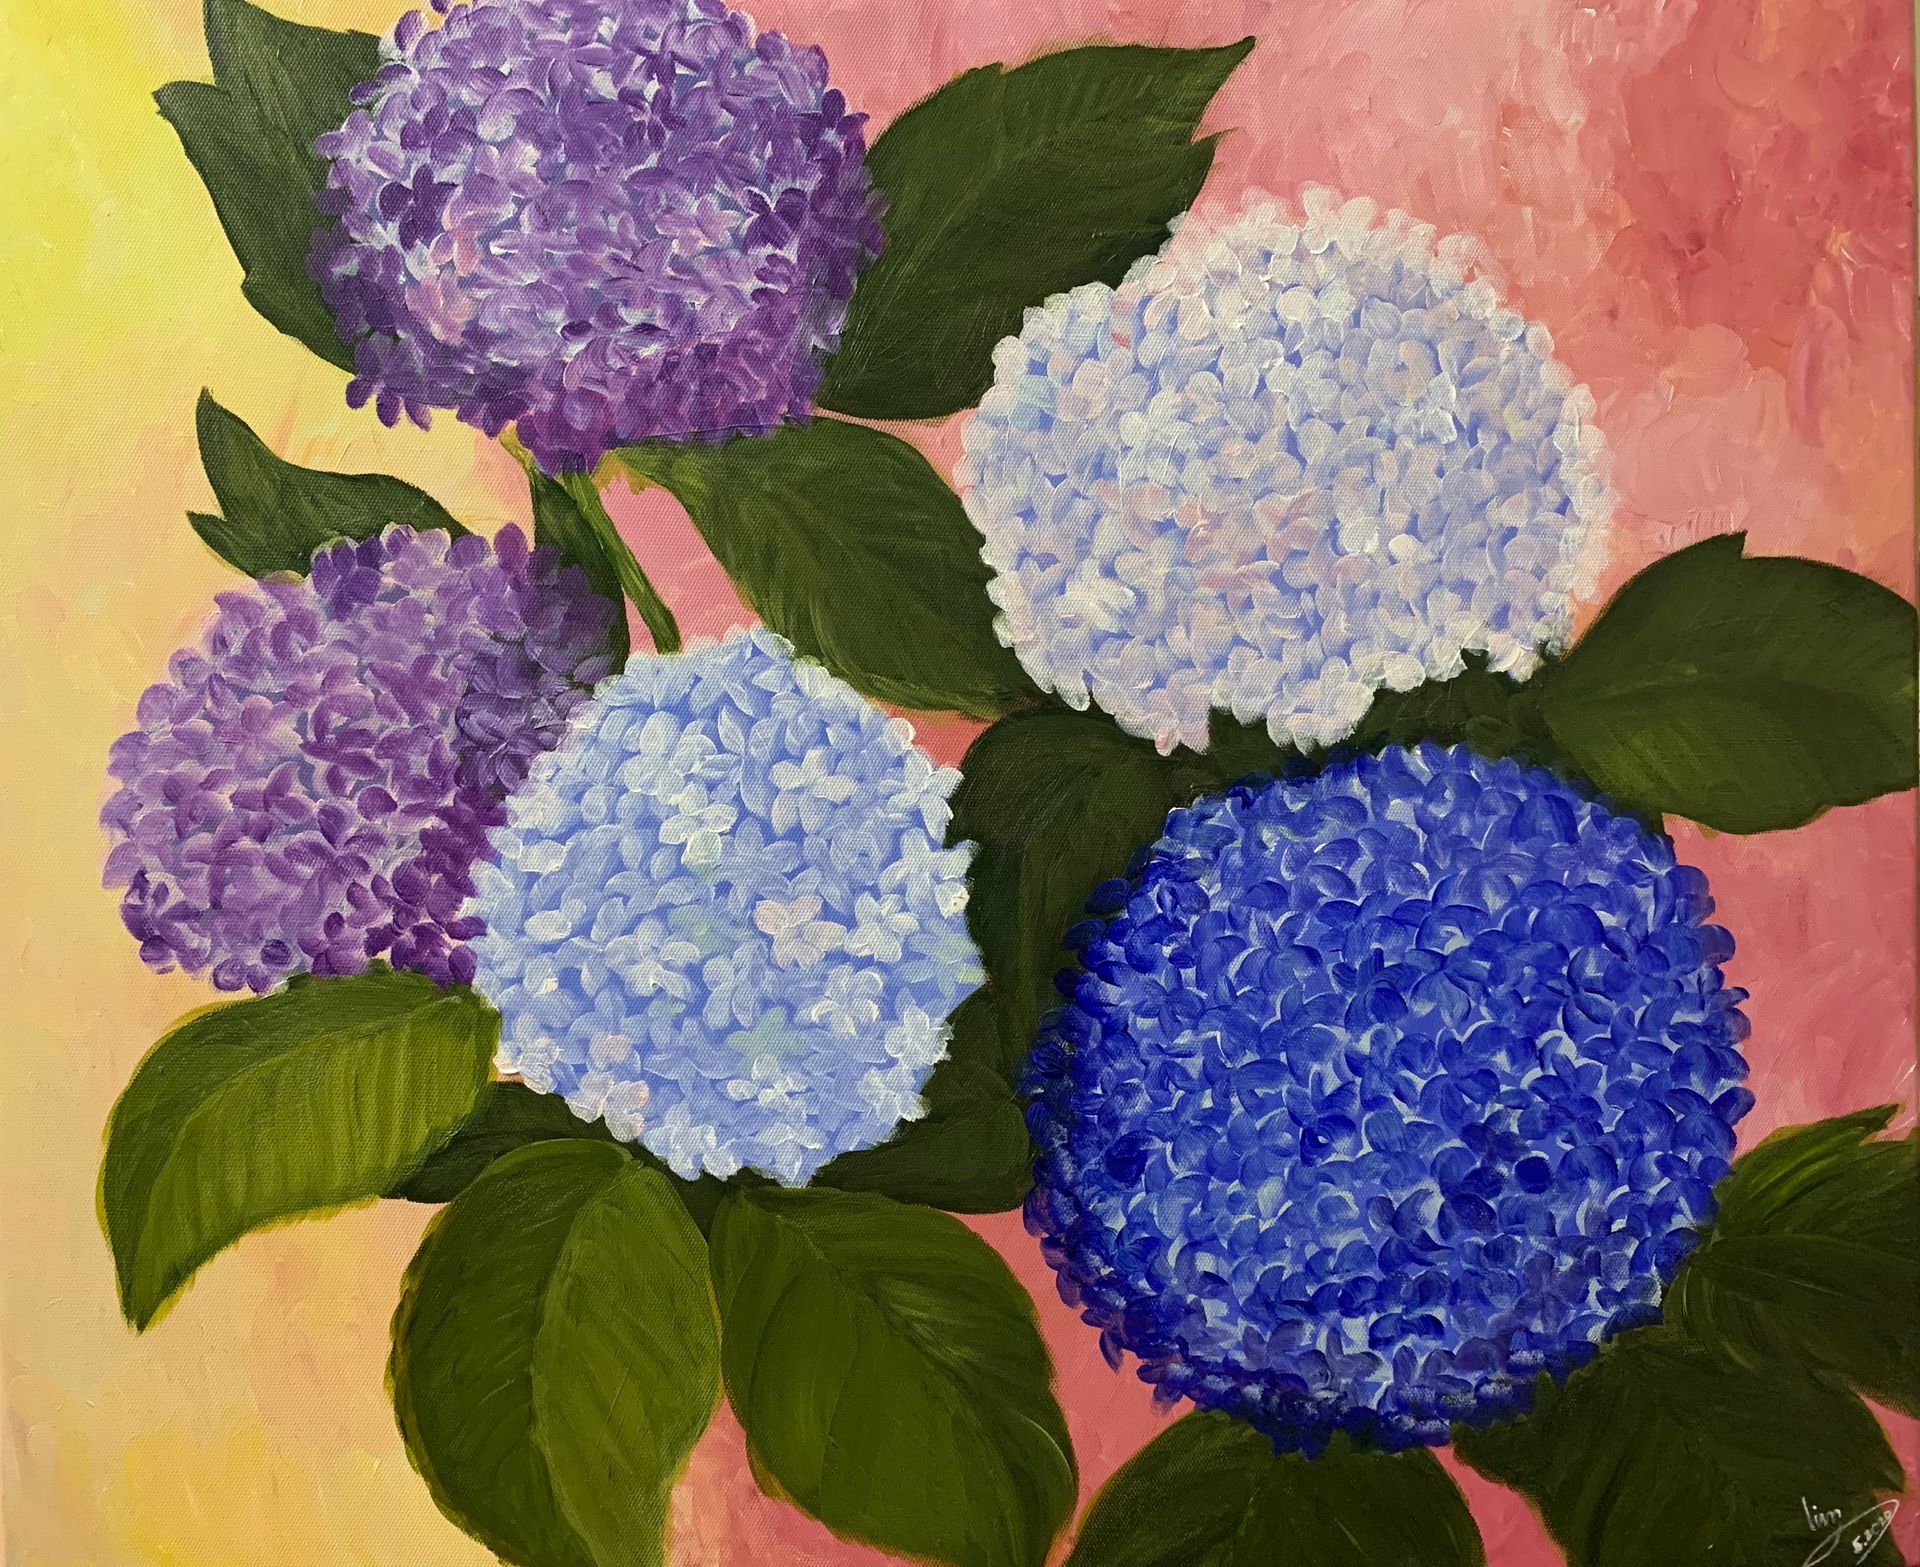 Vẽ hoa cẩm tú cầu màu nước là một thú vui tuyệt vời cho những người yêu nghệ thuật. Hãy xem hình và tìm hiểu thêm về quá trình tạo ra một bức tranh hoàn hảo với hoa cẩm tú cầu màu nước.